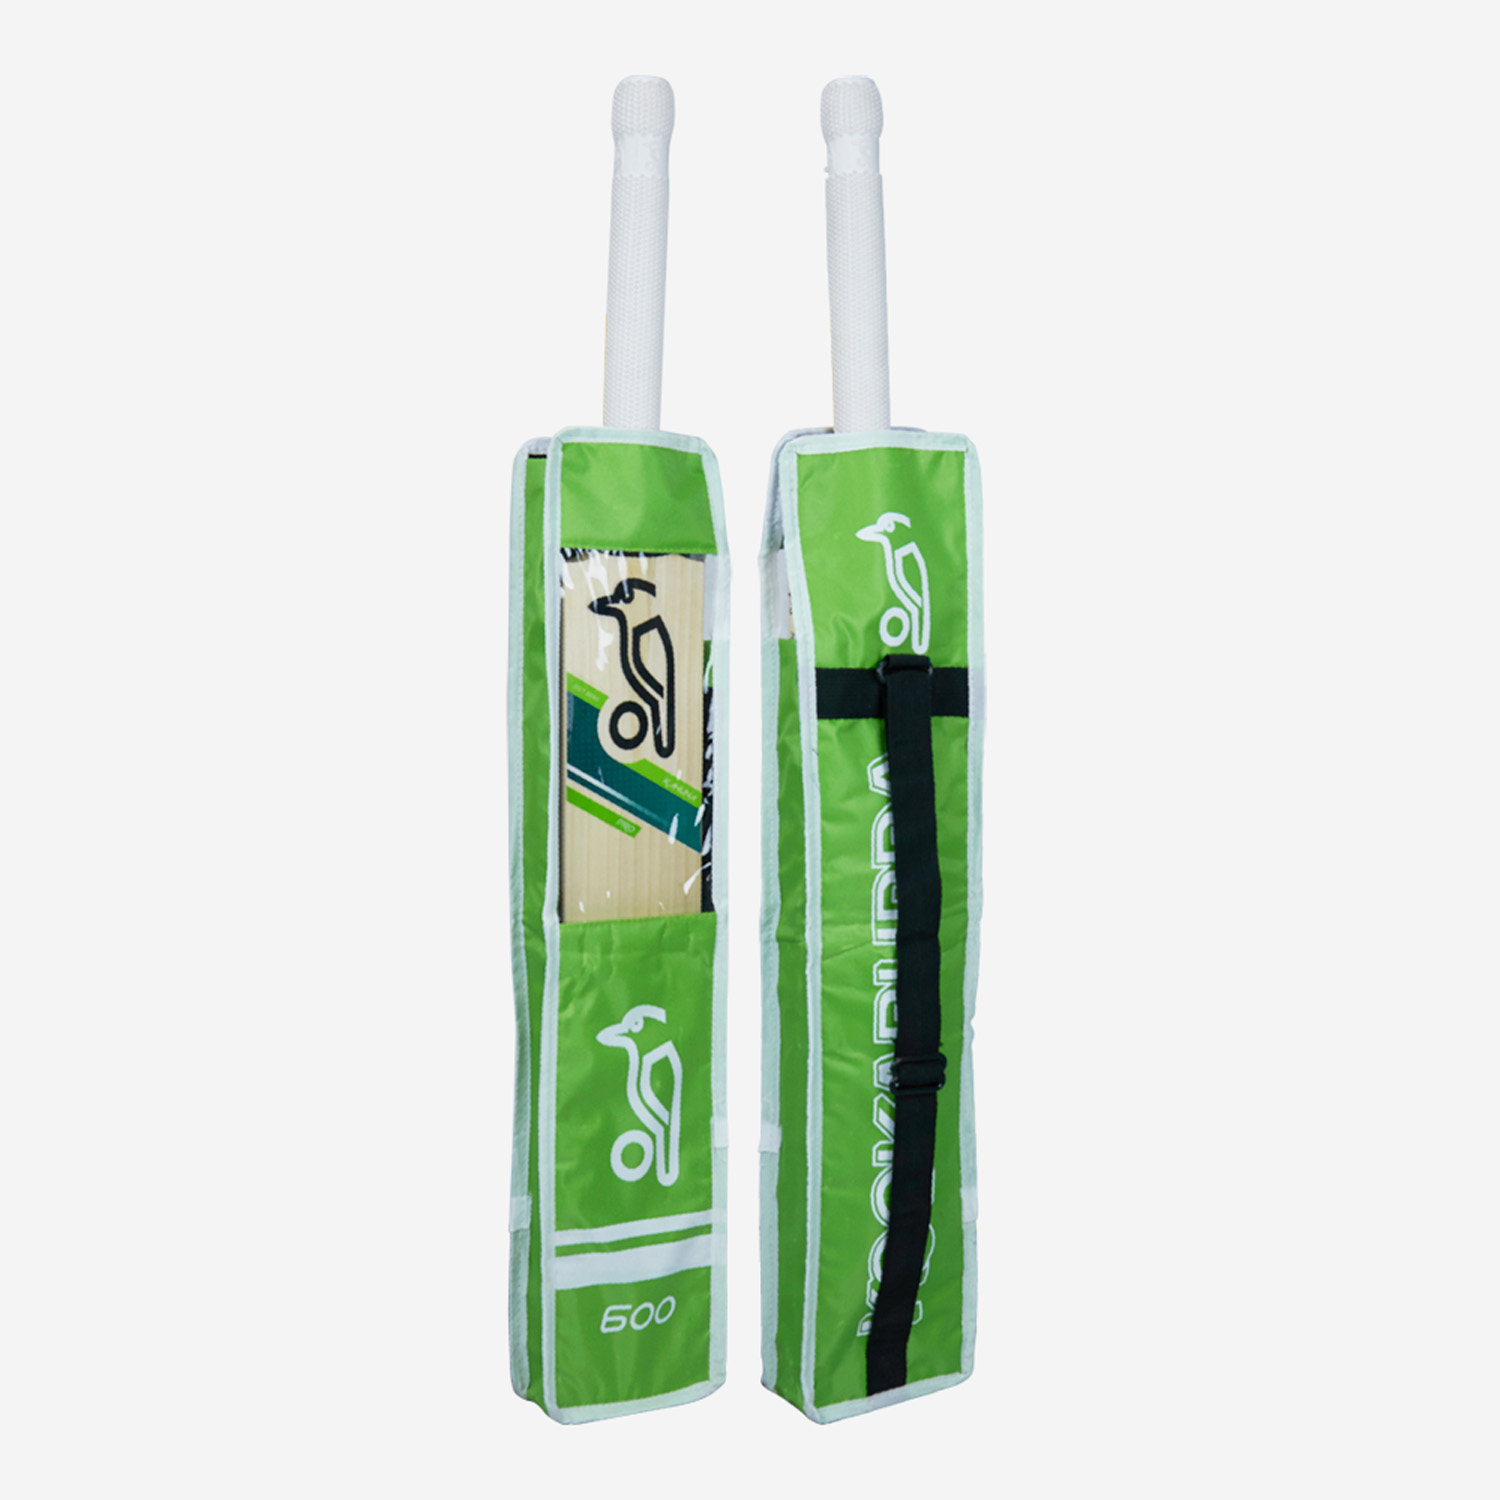 Kookaburra Pro 600 Cricket Bat Cover